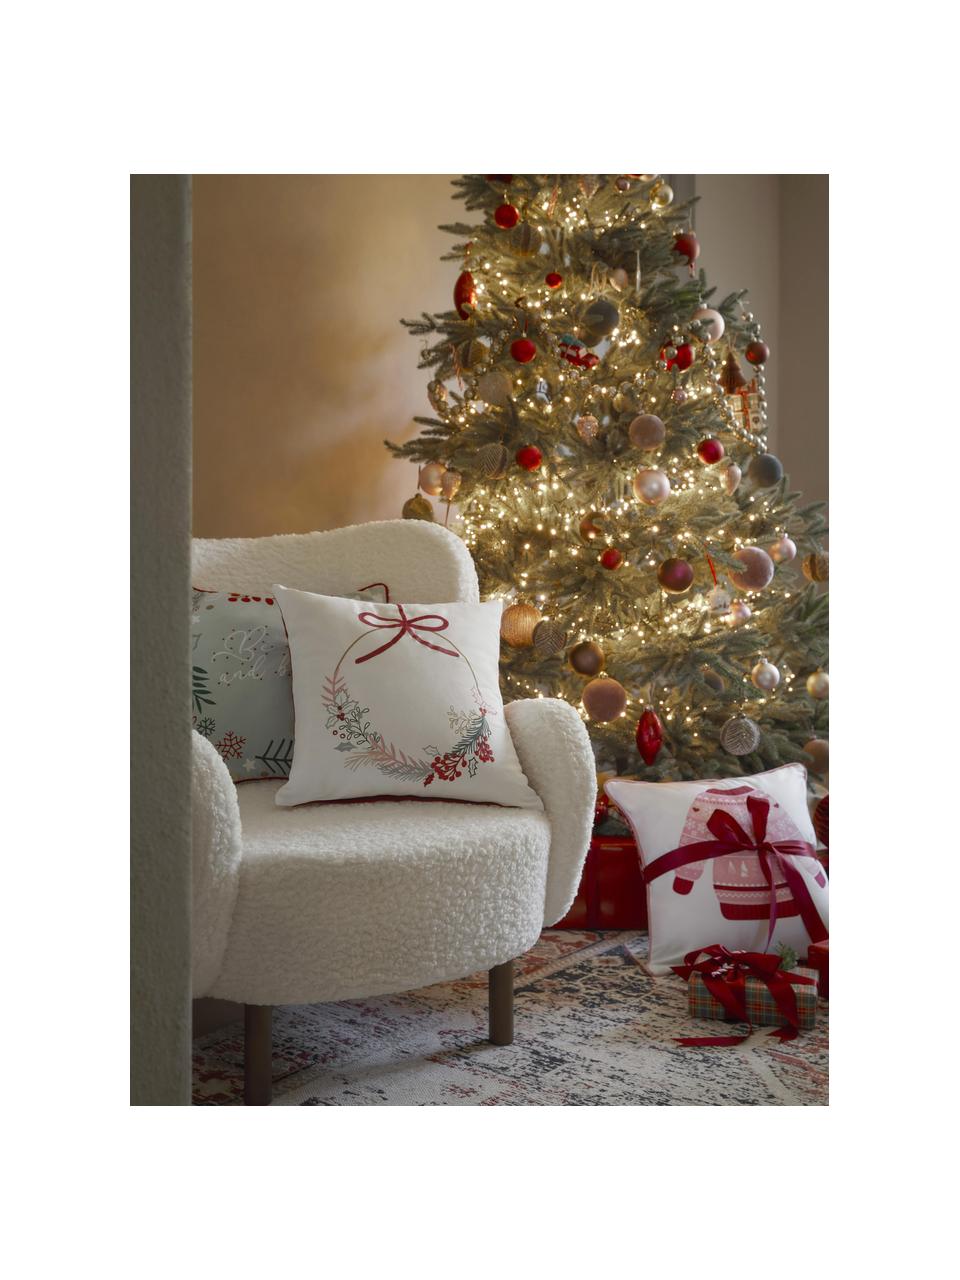 Bestickte Kissenhülle Tinsel mit weihnachtlichem Motiv, 100 % Baumwolle, Weiß, Mehrfarbig, Rot, B 45 x L 45 cm